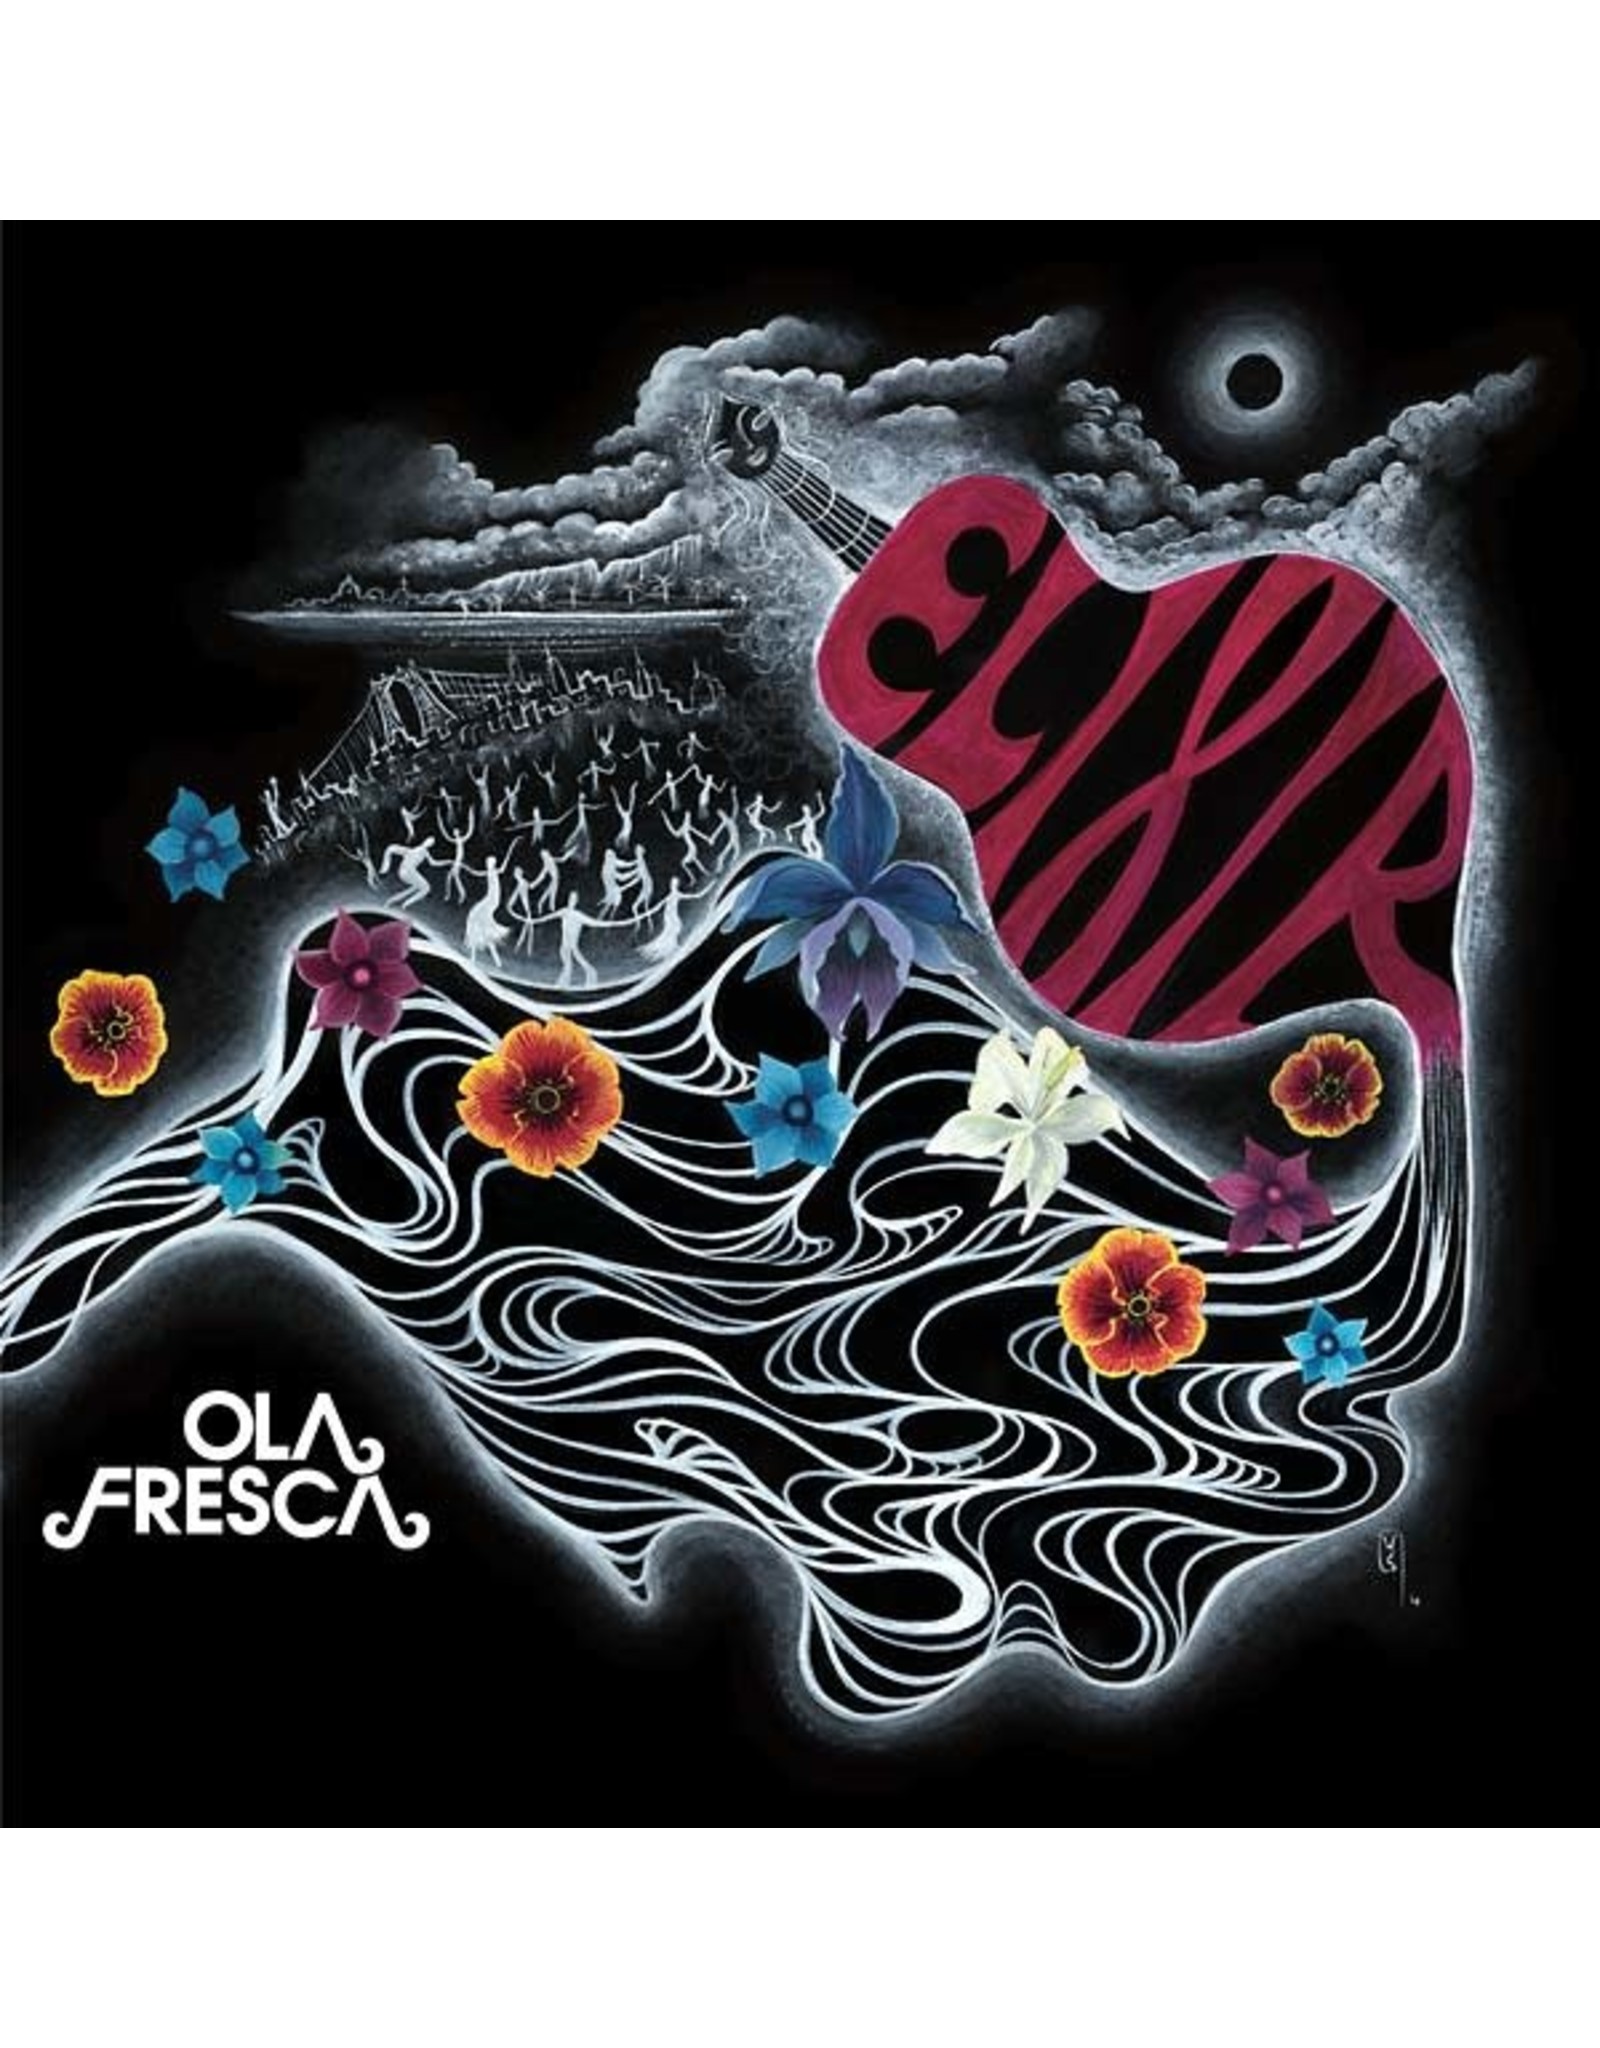 New Vinyl Ola Fresca - Elixir LP